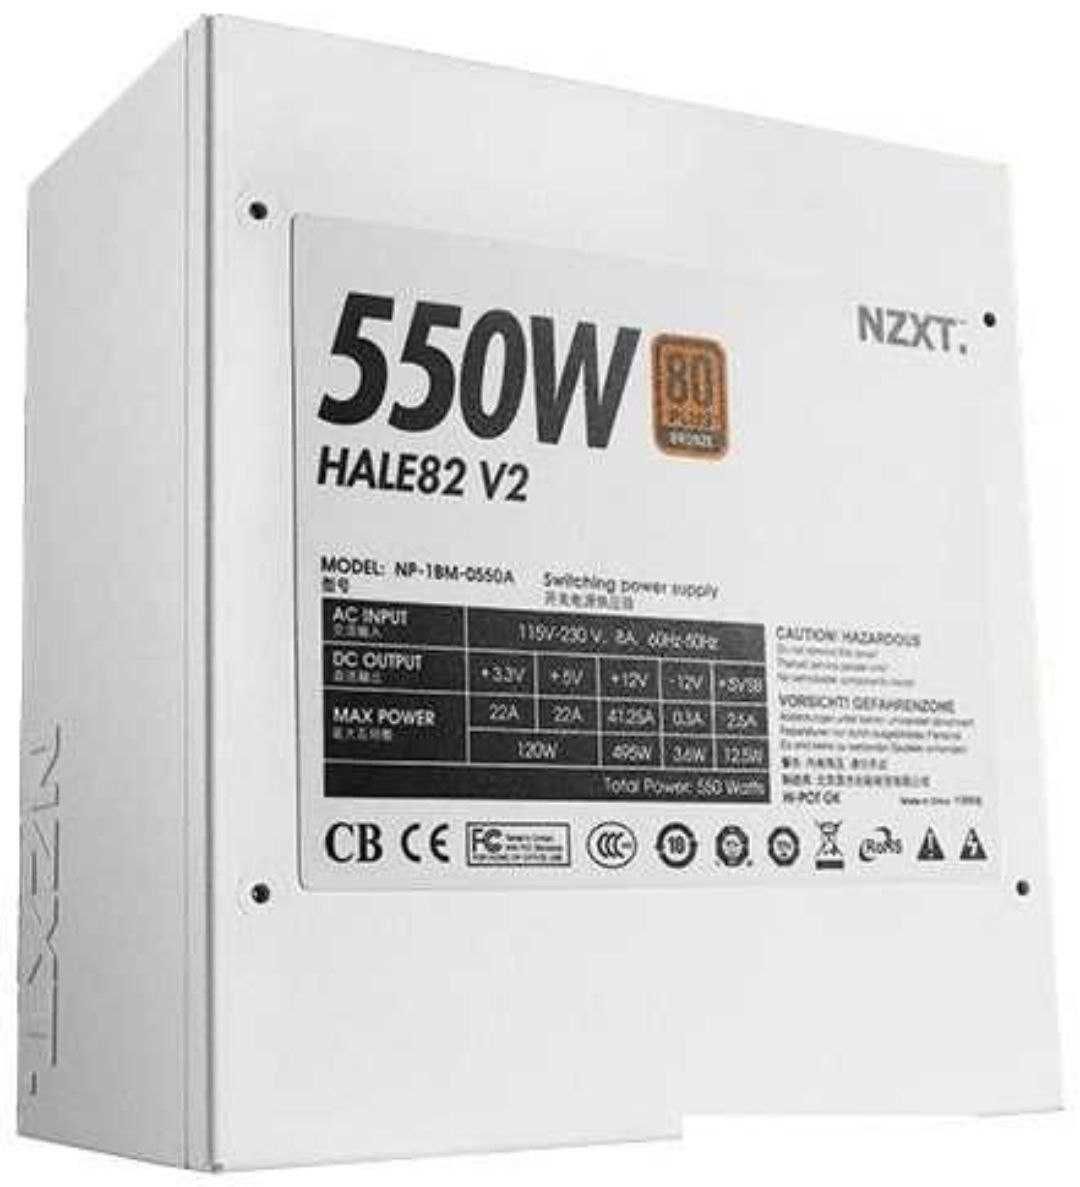 Блок питания NZXT Hale 82 v2 550W (NP-1BM-0550A-EU)